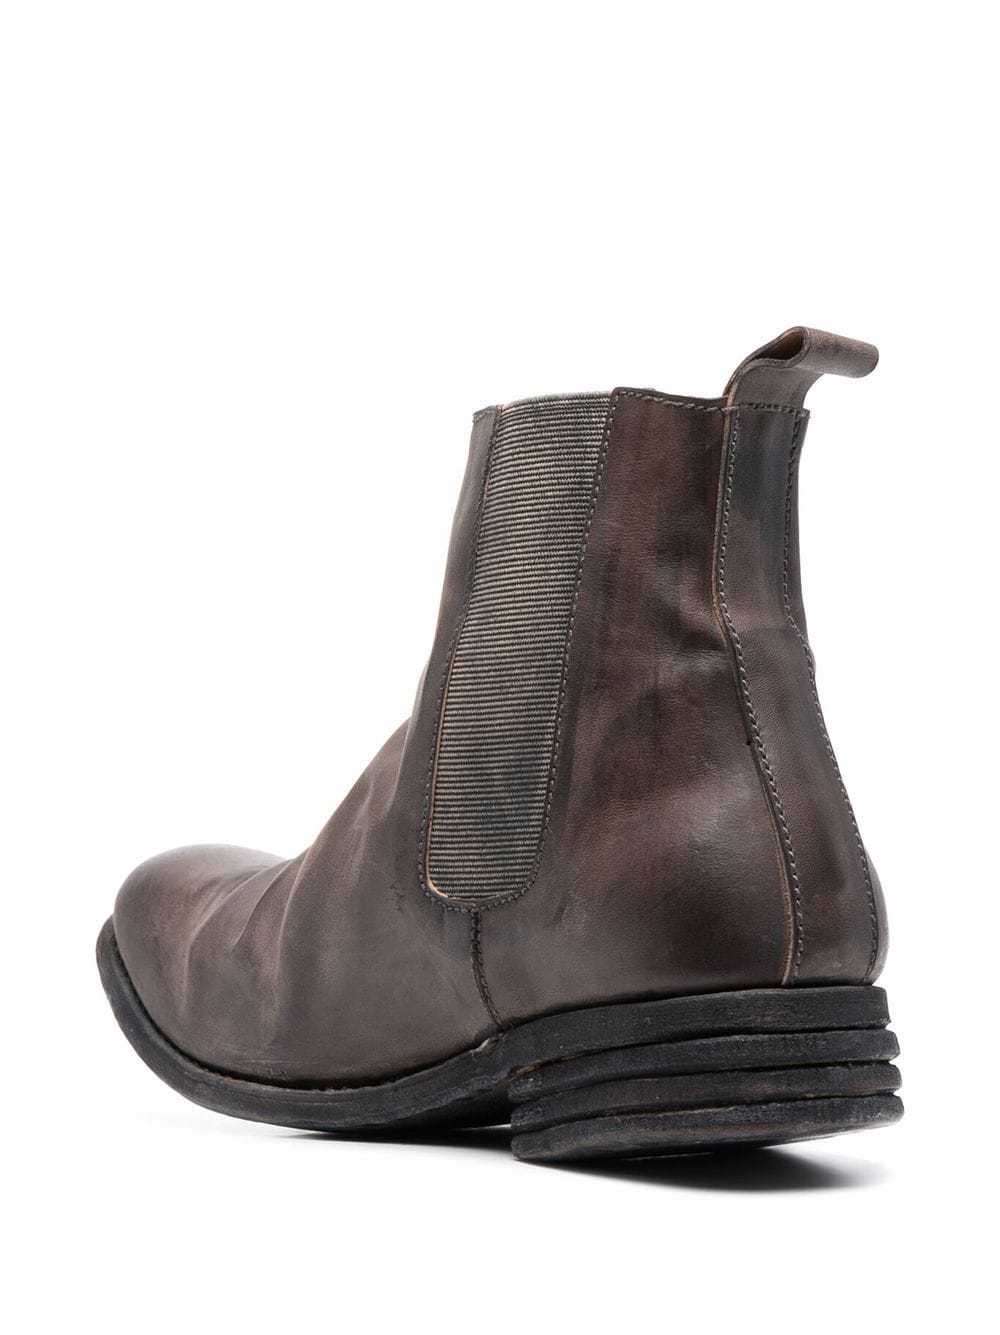 Poème Bohémien Distressed Leather Chelsea Boots, $1,028 | farfetch.com ...